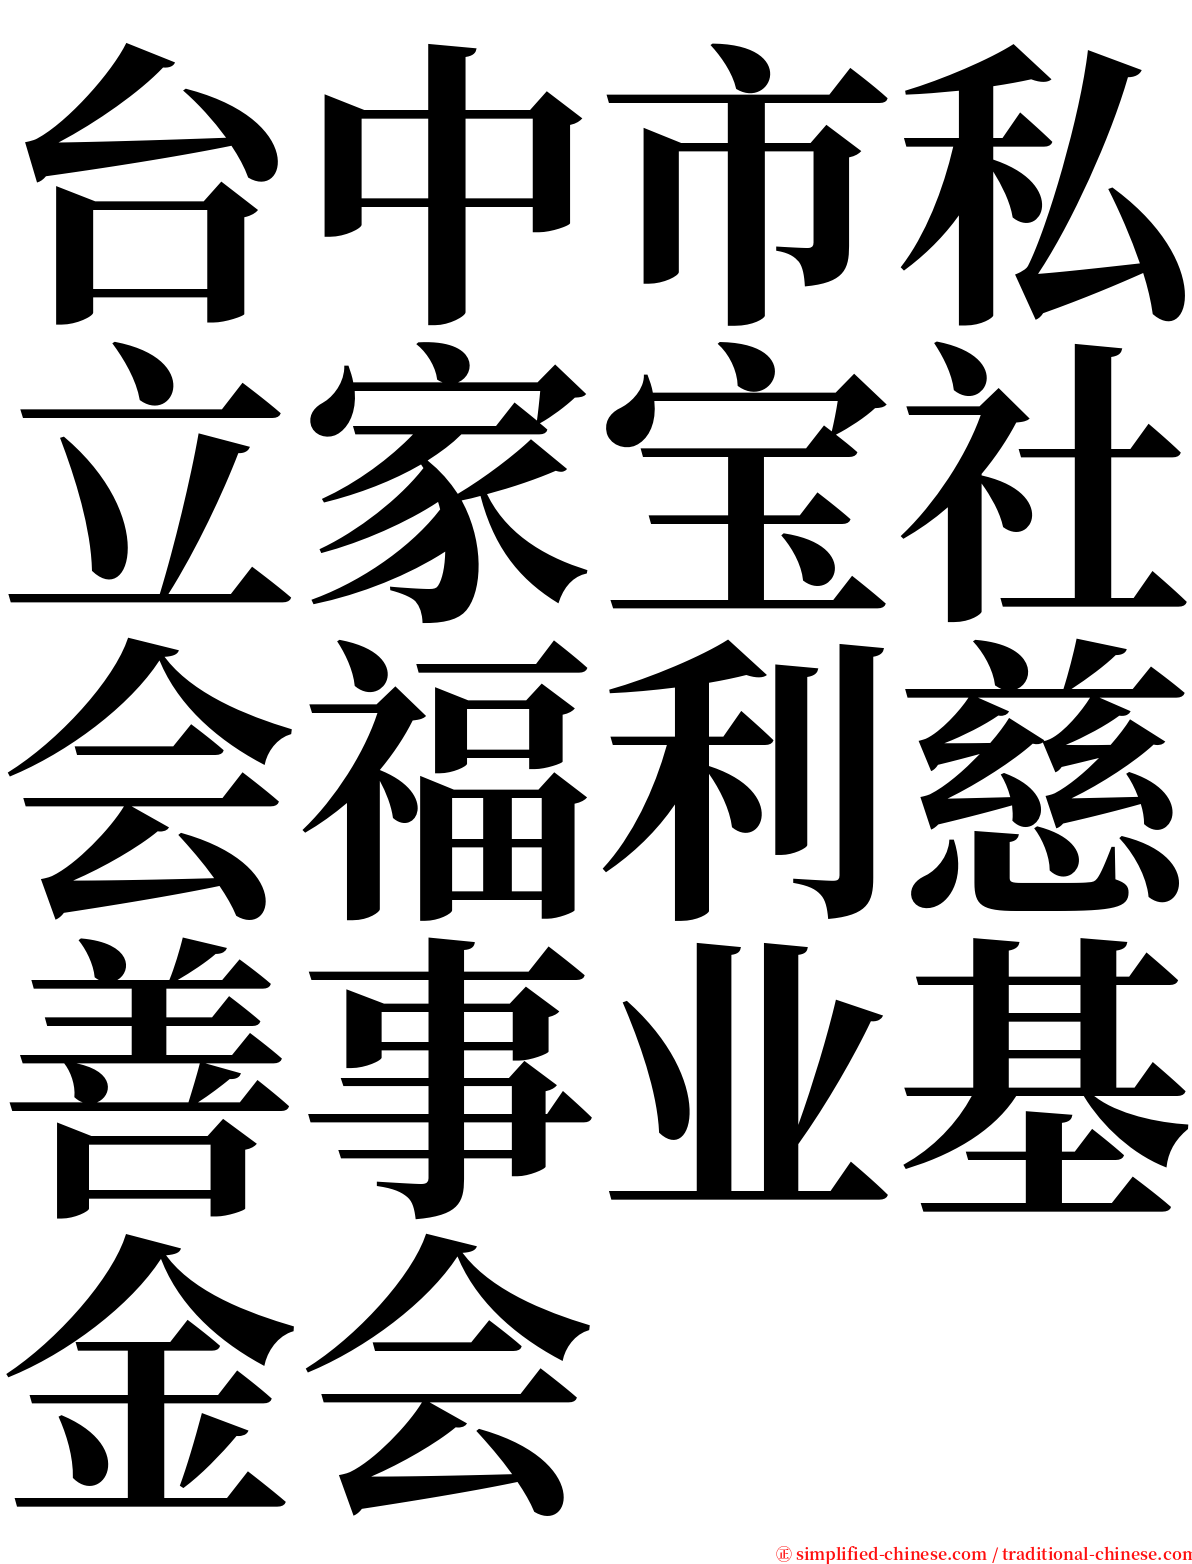 台中市私立家宝社会福利慈善事业基金会 serif font